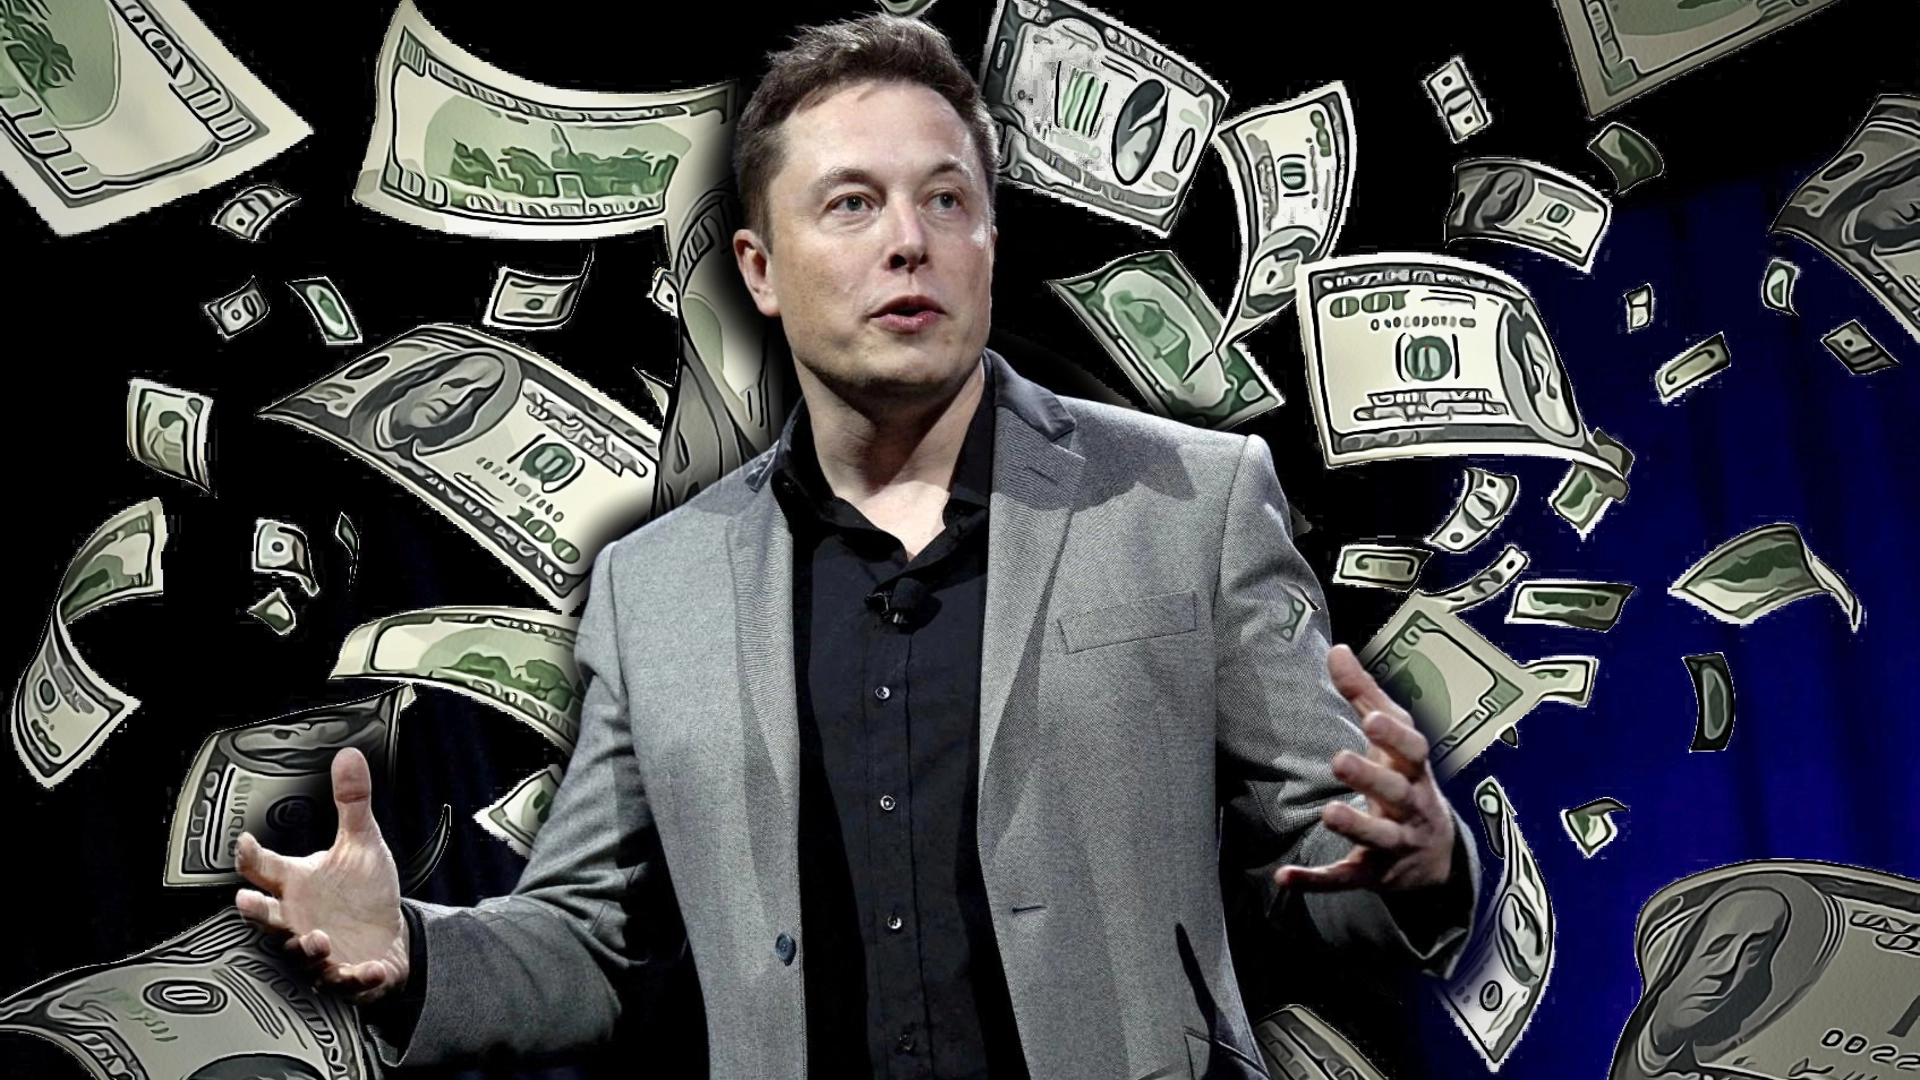 La fortuna de Elon Musk se esfuma: Twitter y Tesla son un agujero de pérdidas millonarias